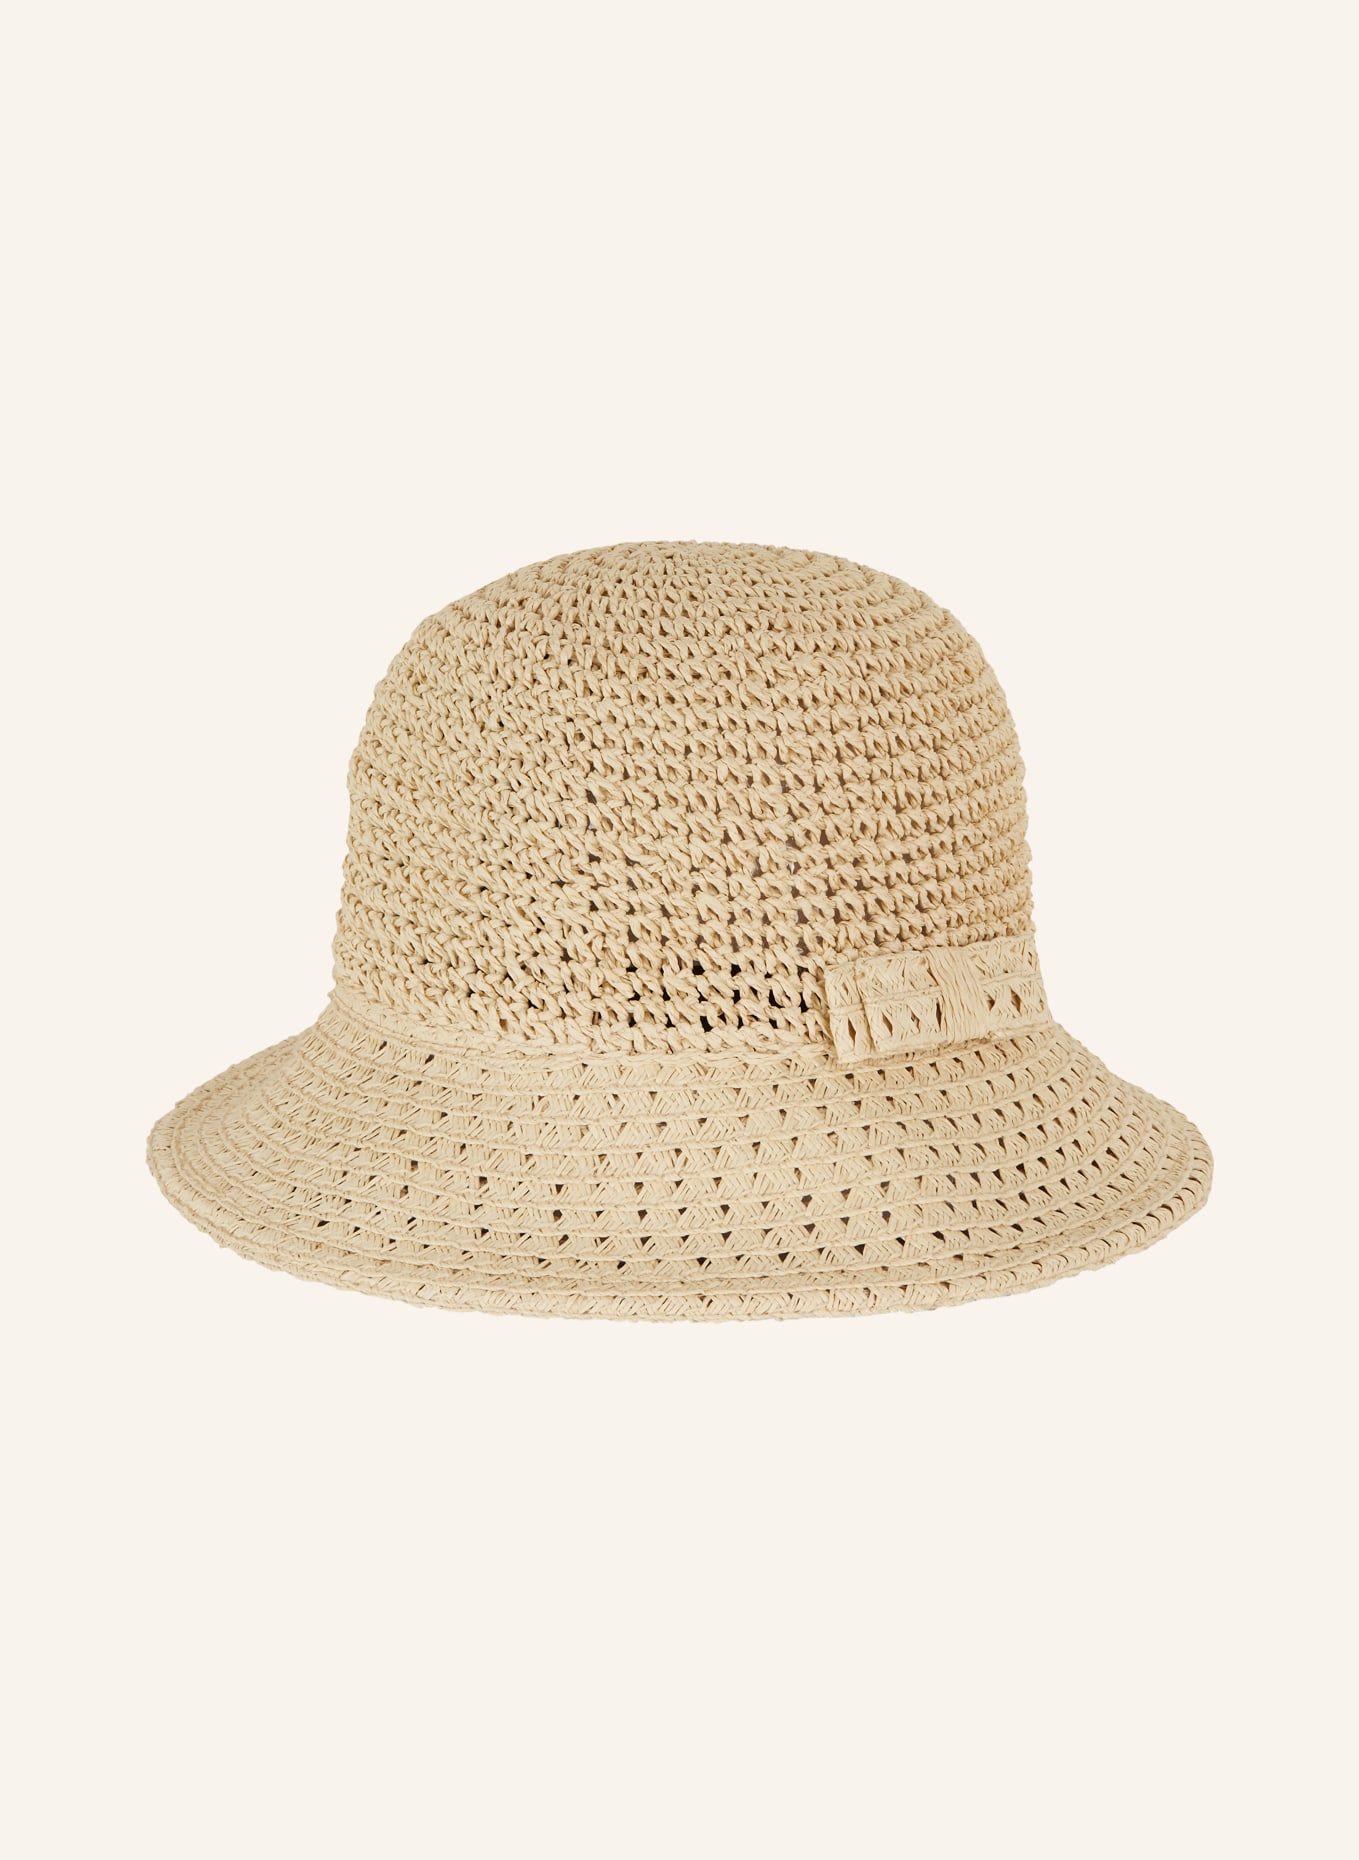 SEEBERGER Straw hat, Color: ECRU (Image 2)